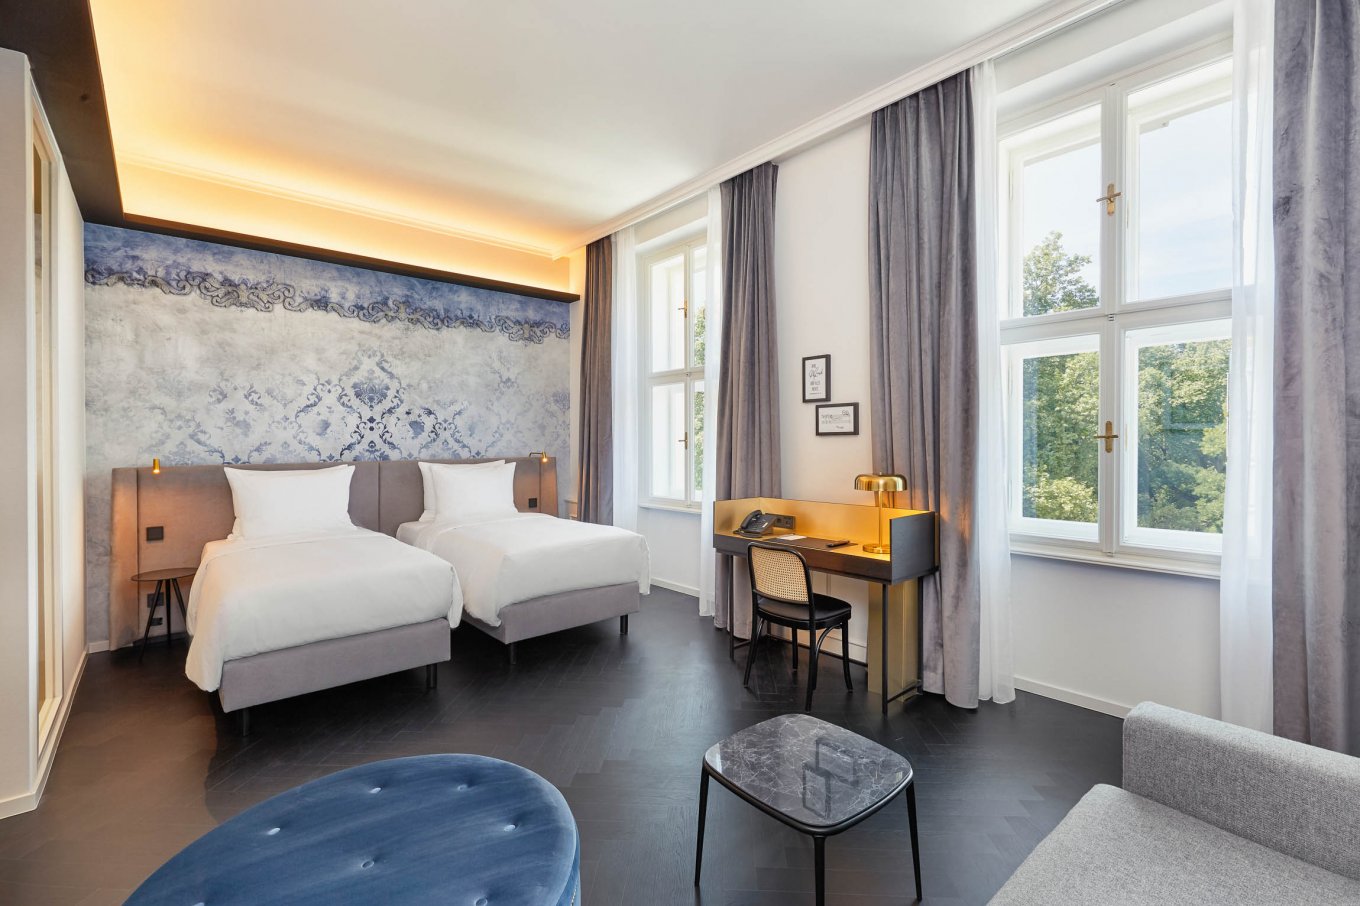 wineo PURLINE Bioboden als edle Fischgrätverlegung im Schlafzimmer mit zwei Betten im Hyperion Hotel in Salzuburg